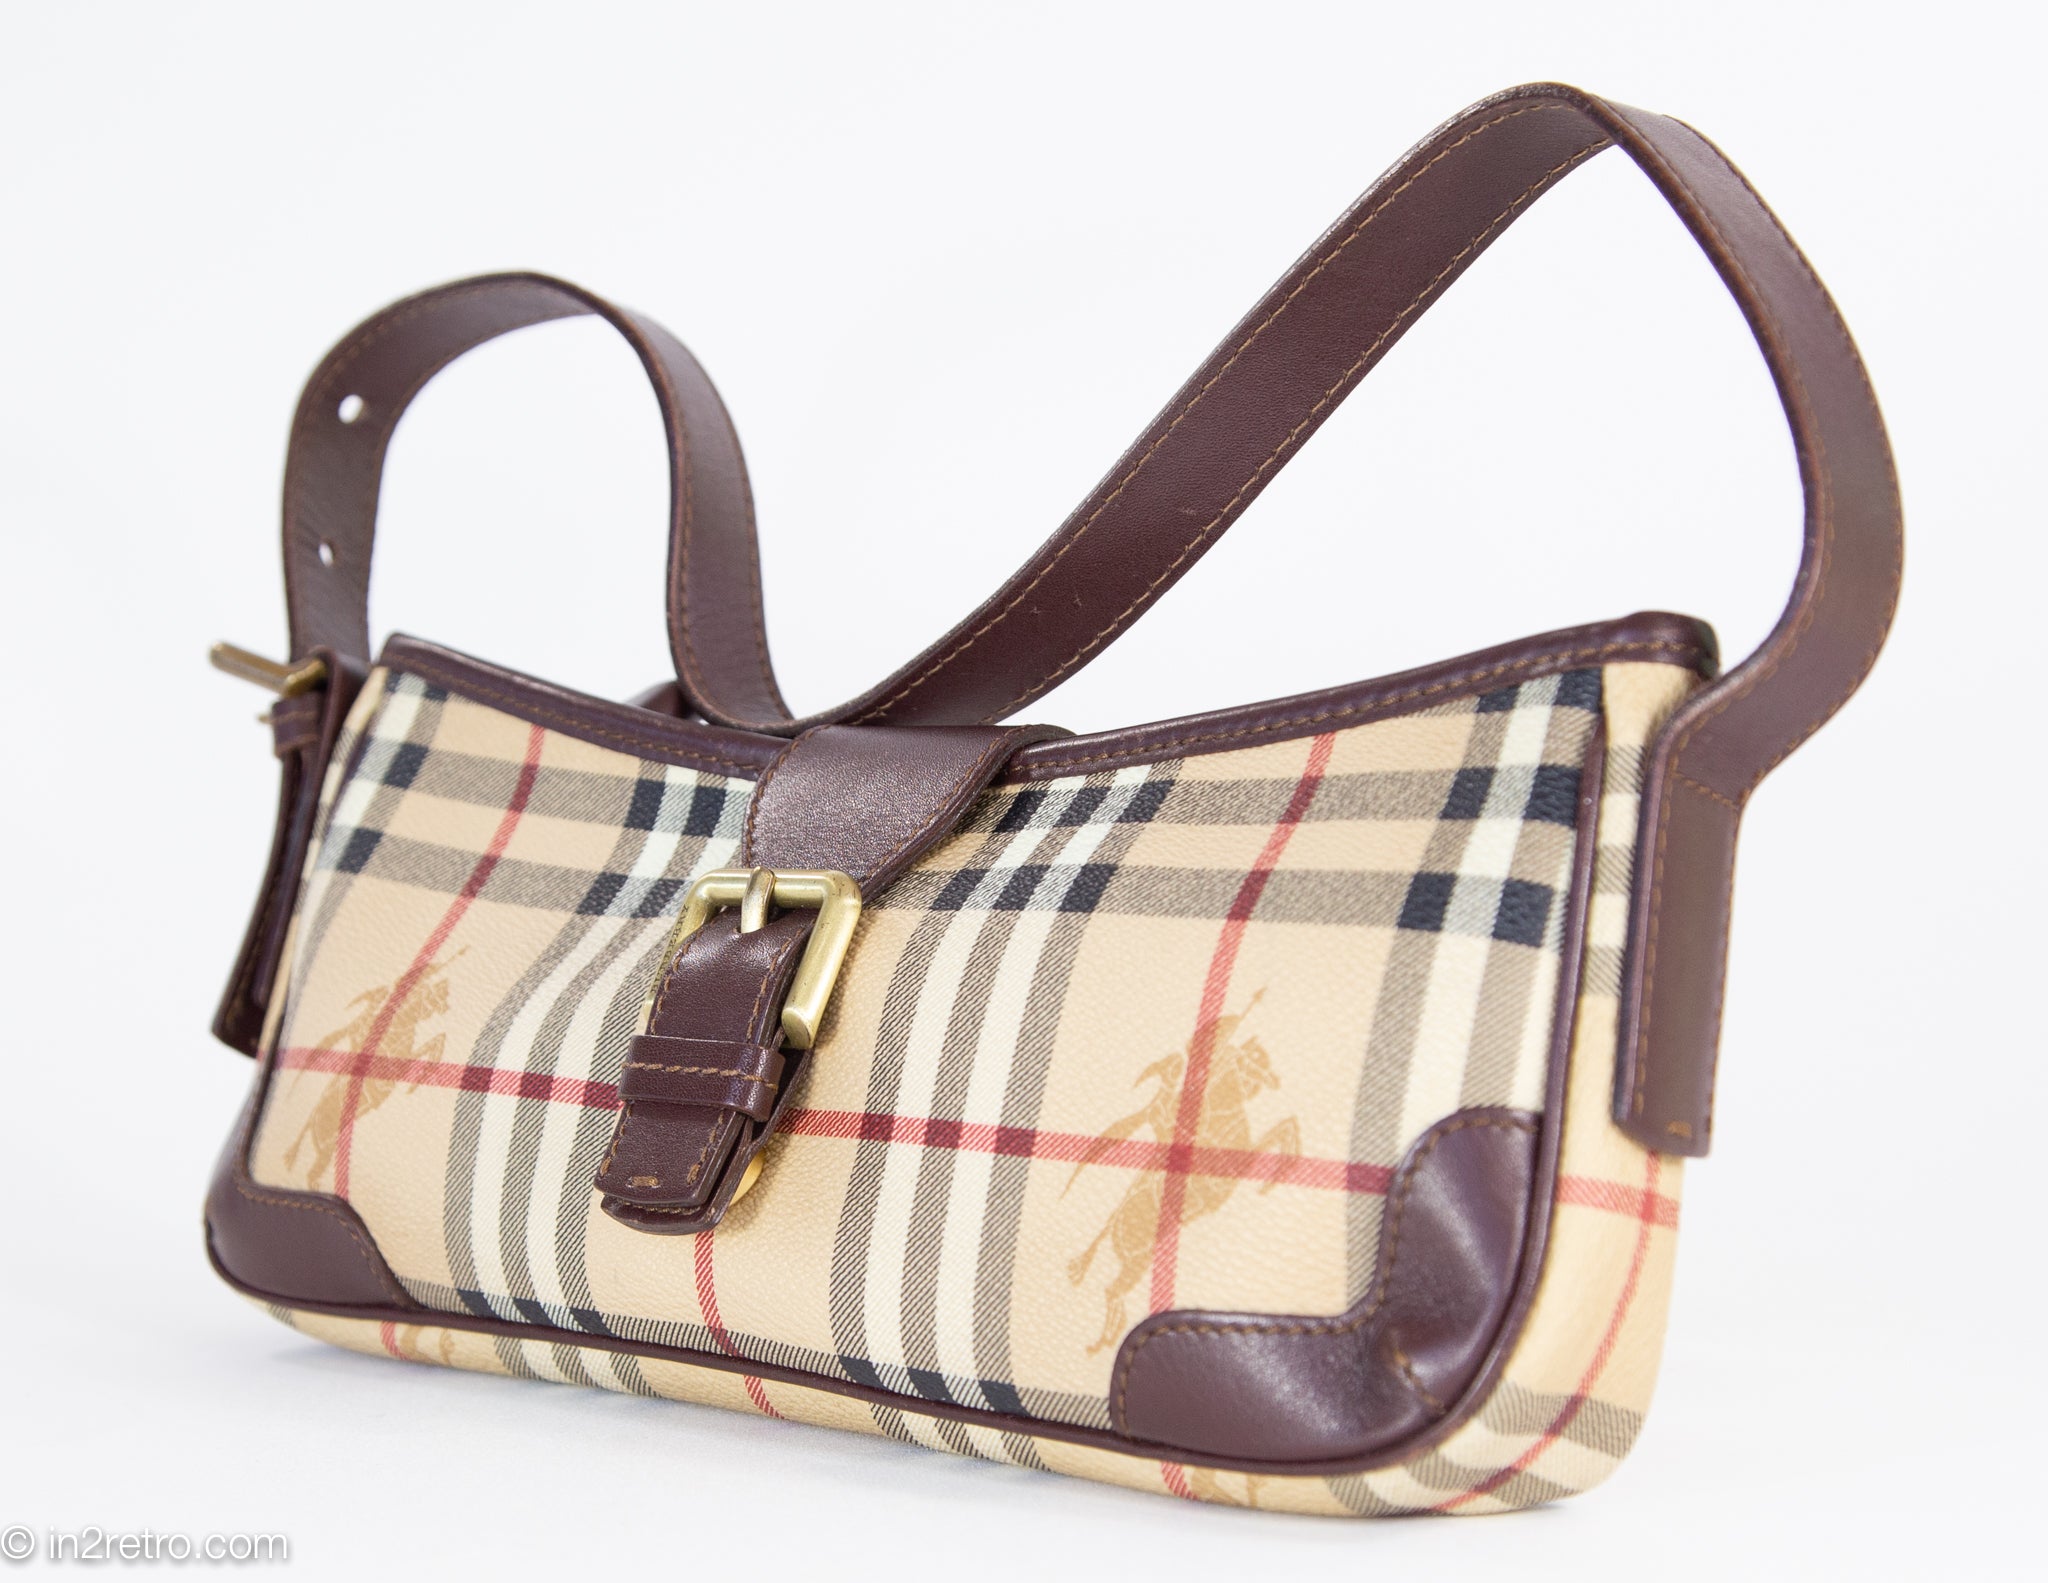 SOLD 🎉 Authentic vintage Burberry shoulder bag